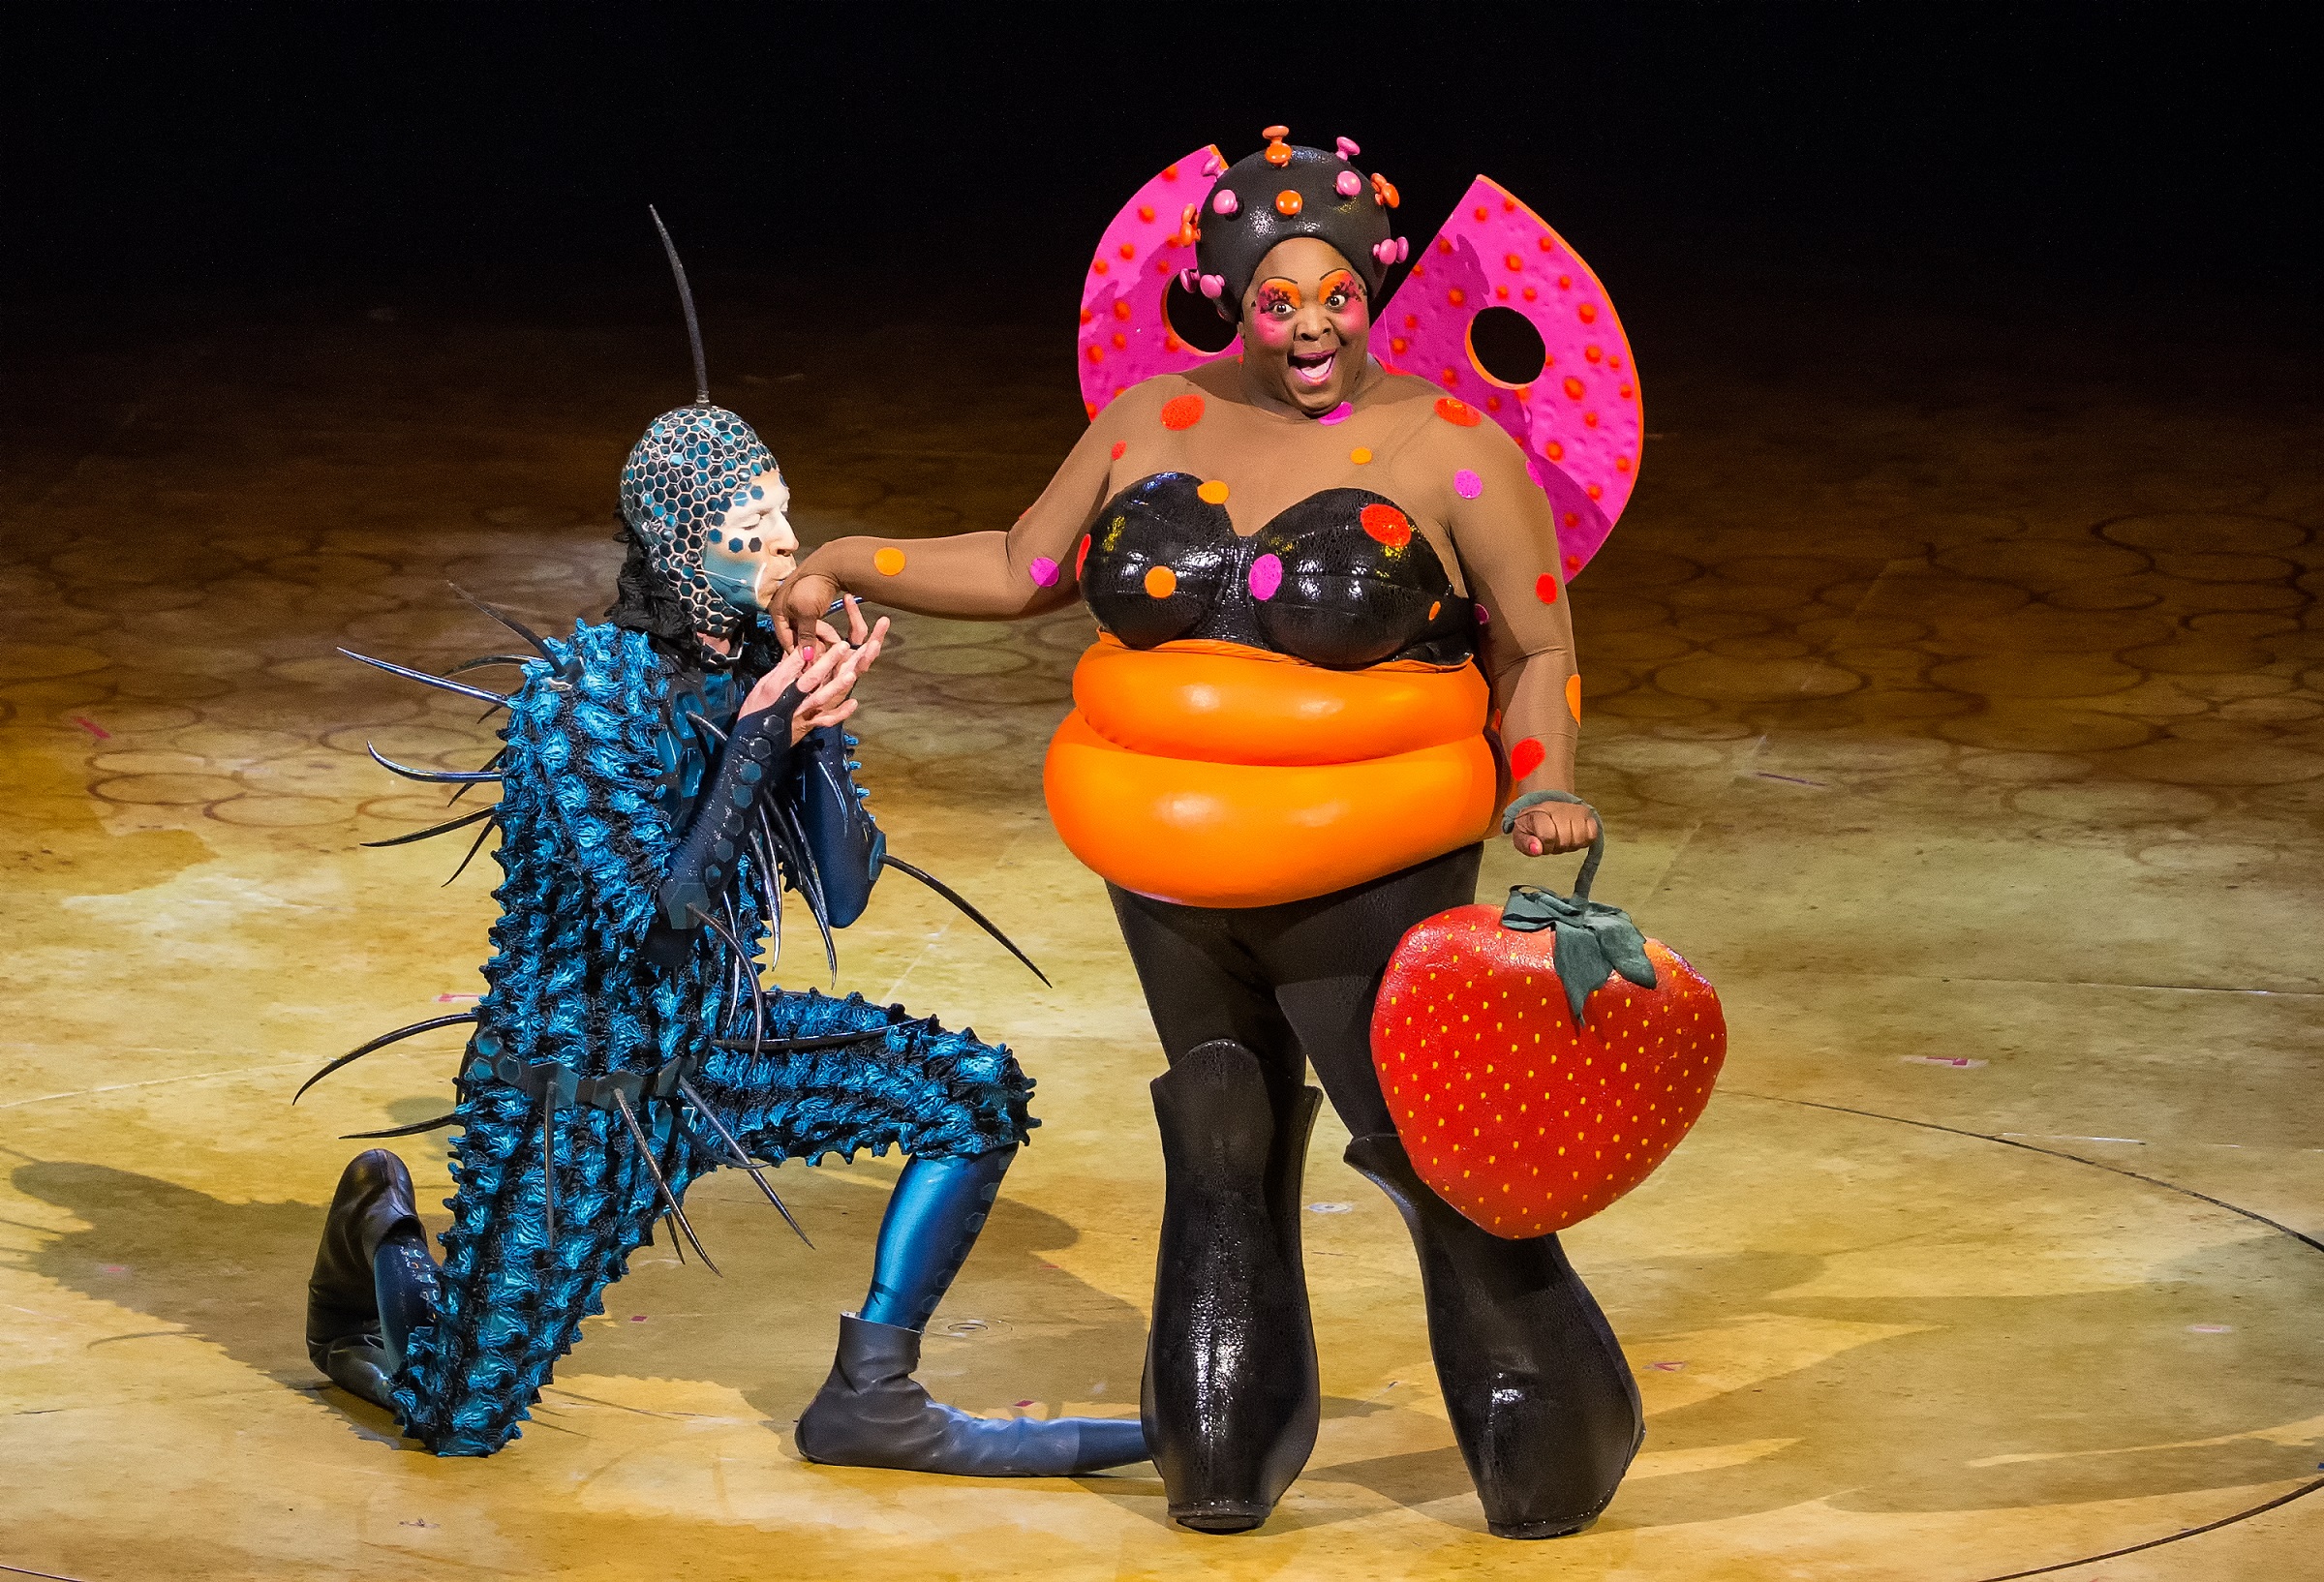 Magyar artistapárral érkezik Budapestre a Cirque du Soleil